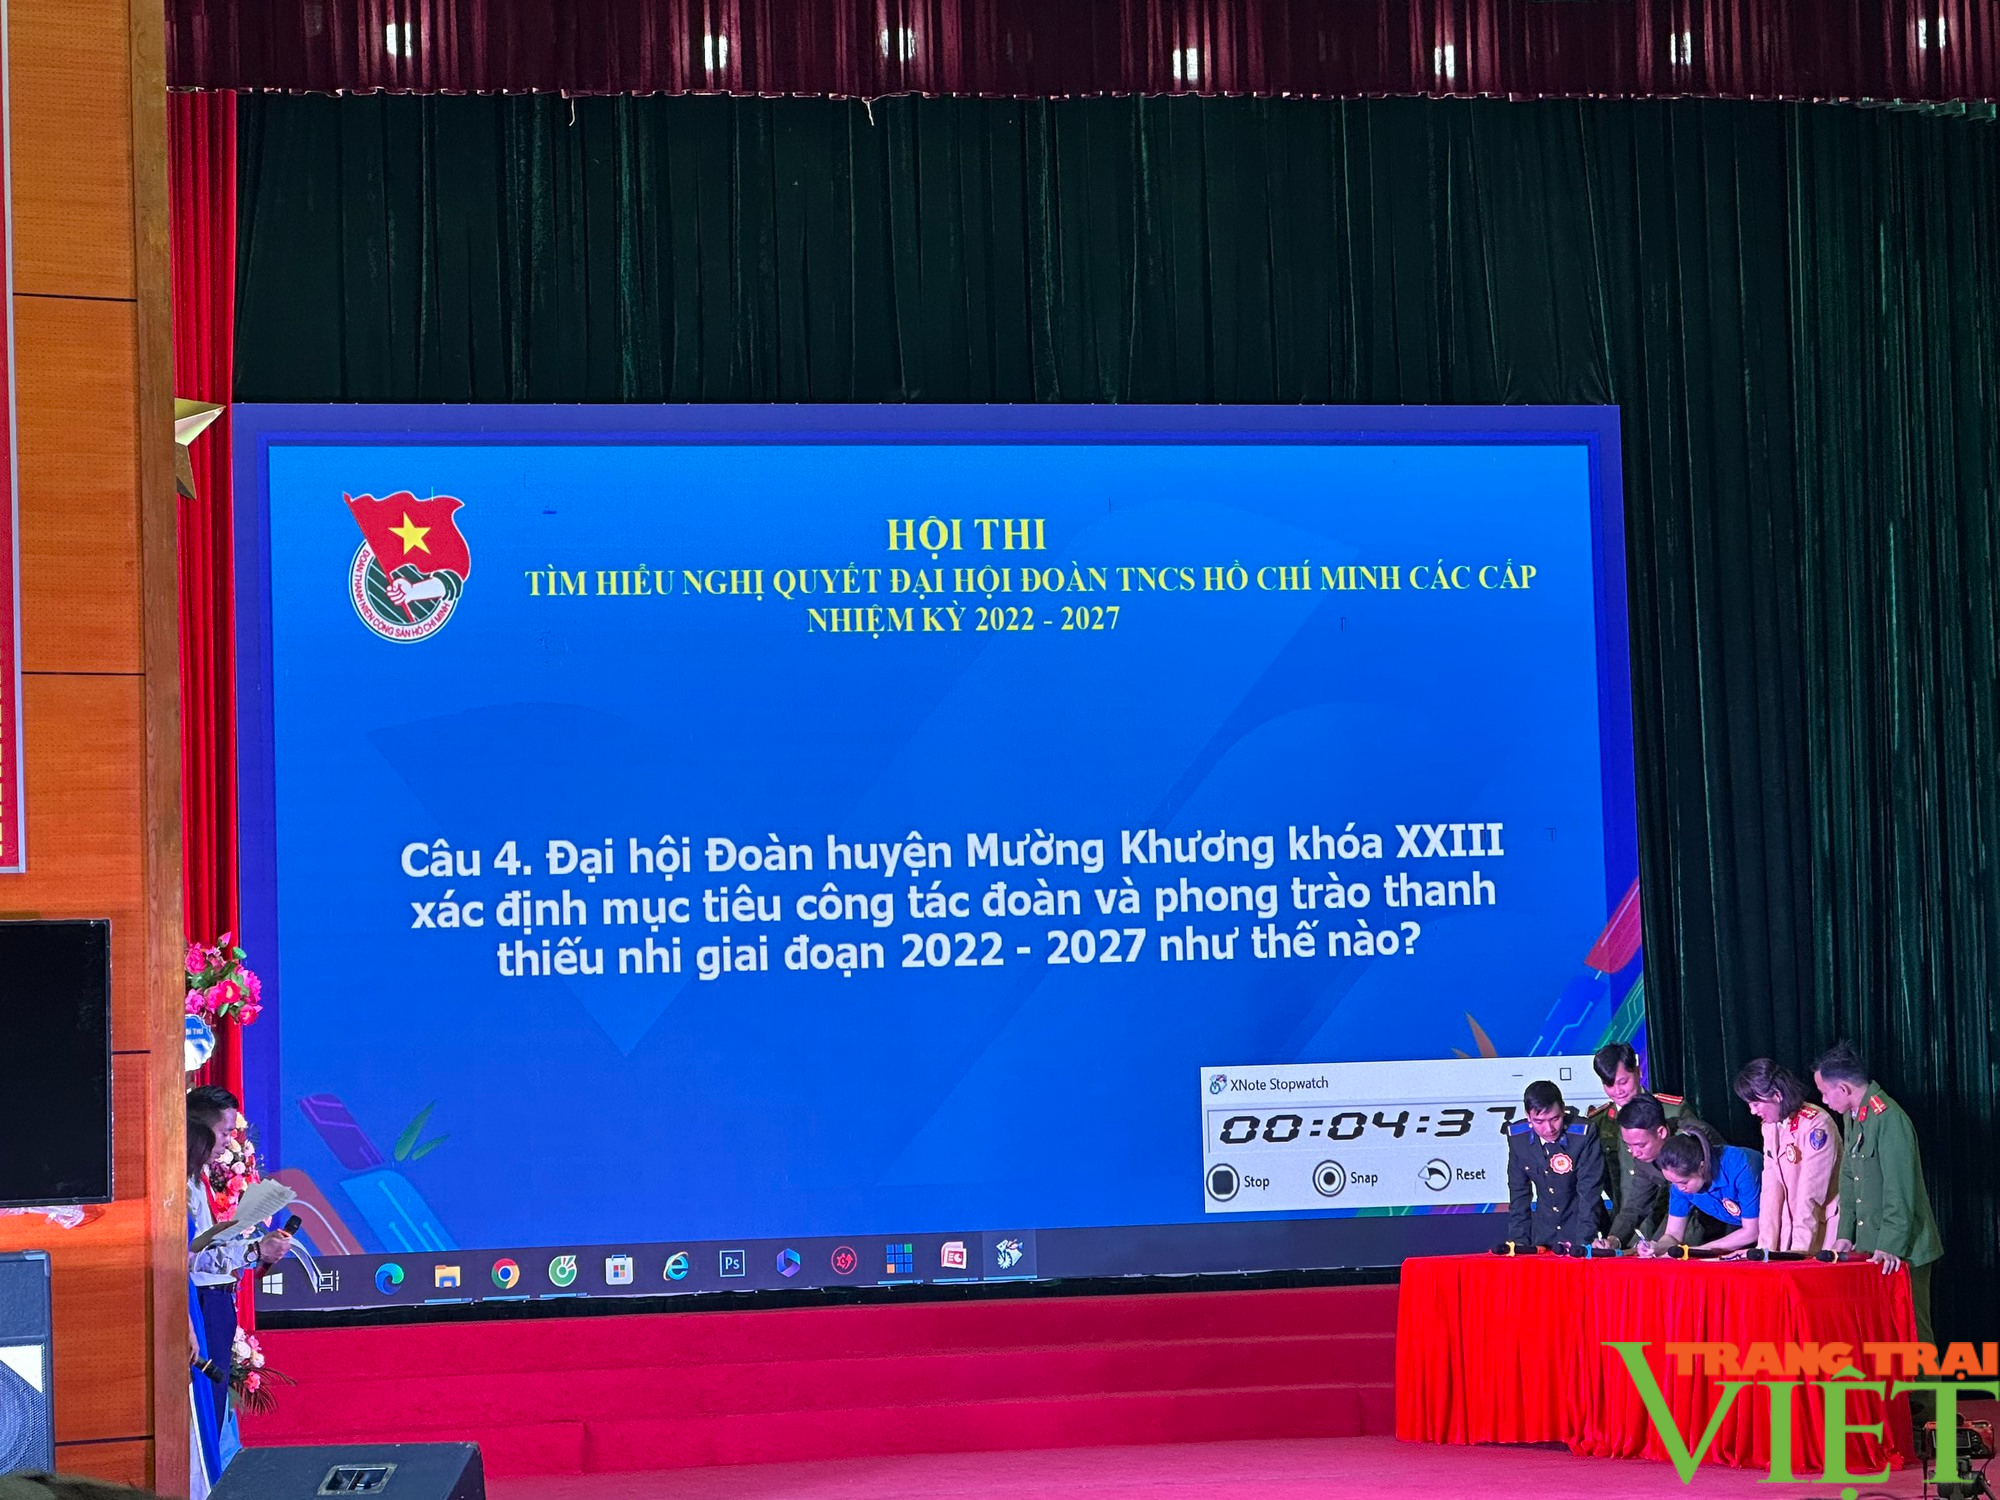   Huyện biên giới Lào Cai: Hội thi tìm hiểu Nghị quyết Đại hội Đoàn TNCS Hồ Chí Minh các cấp - Ảnh 2.